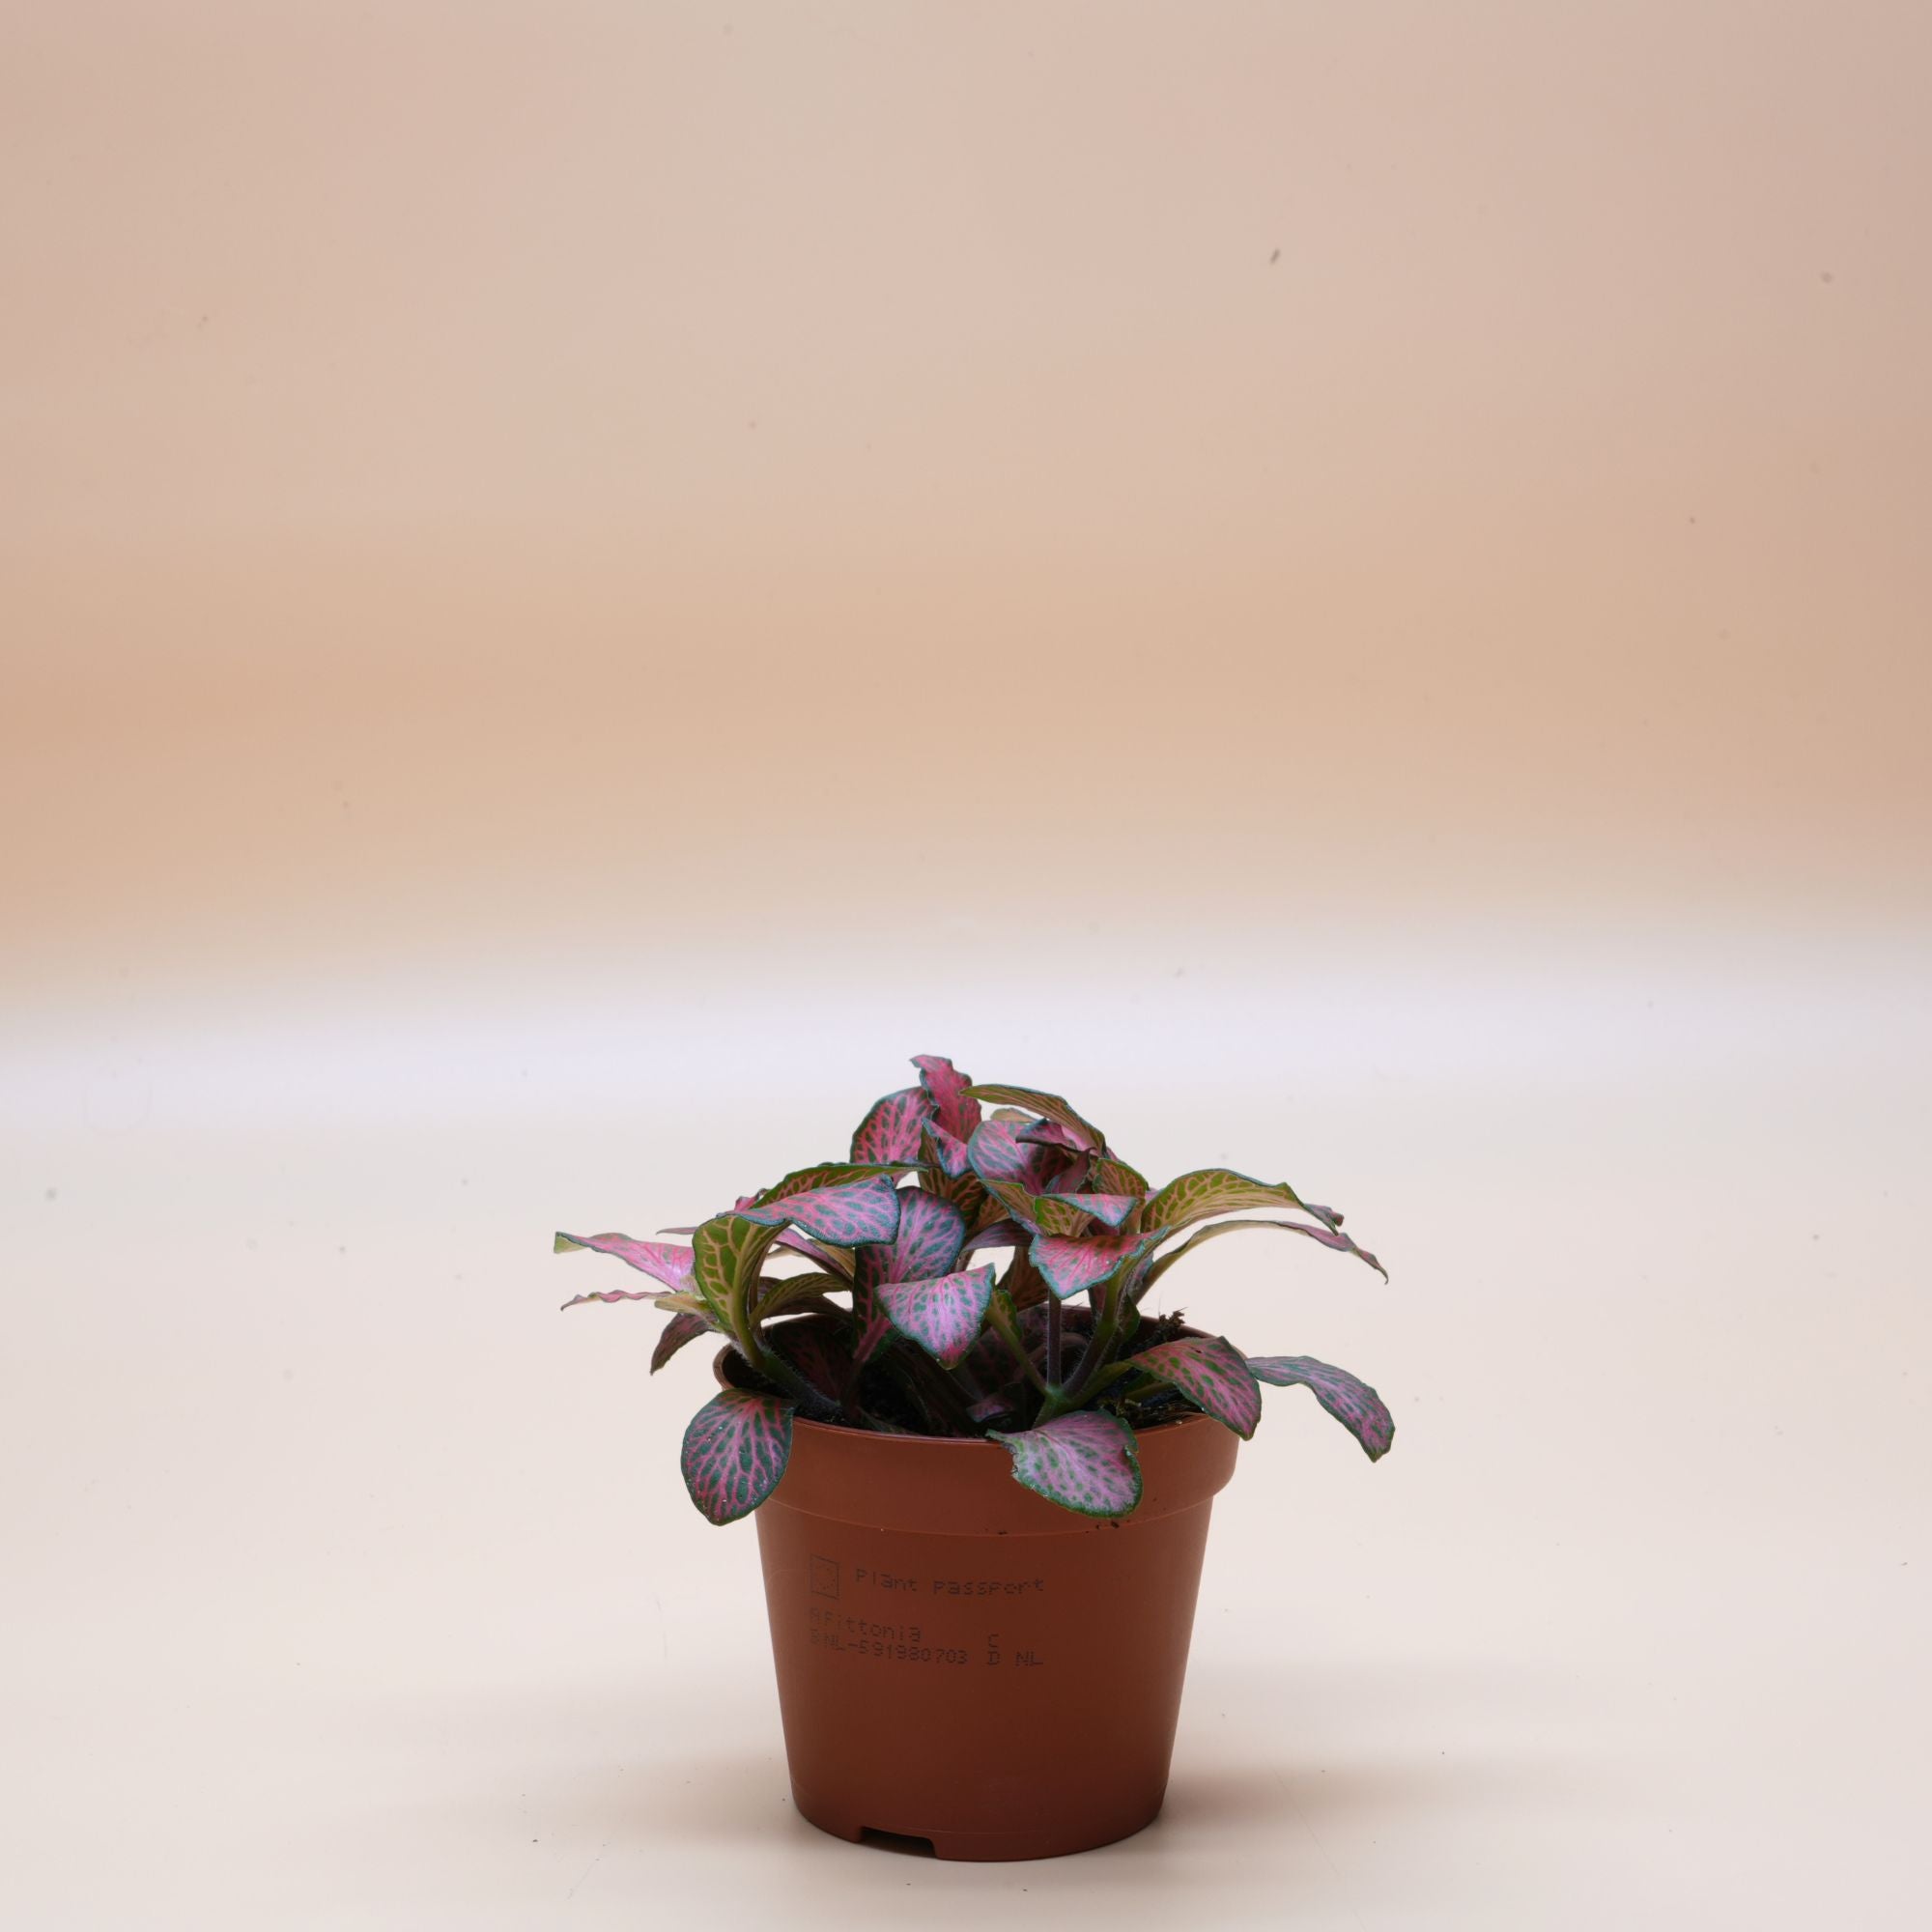 Nerve Plant ◦ Red Fittonia ◦ Terrarium Plant